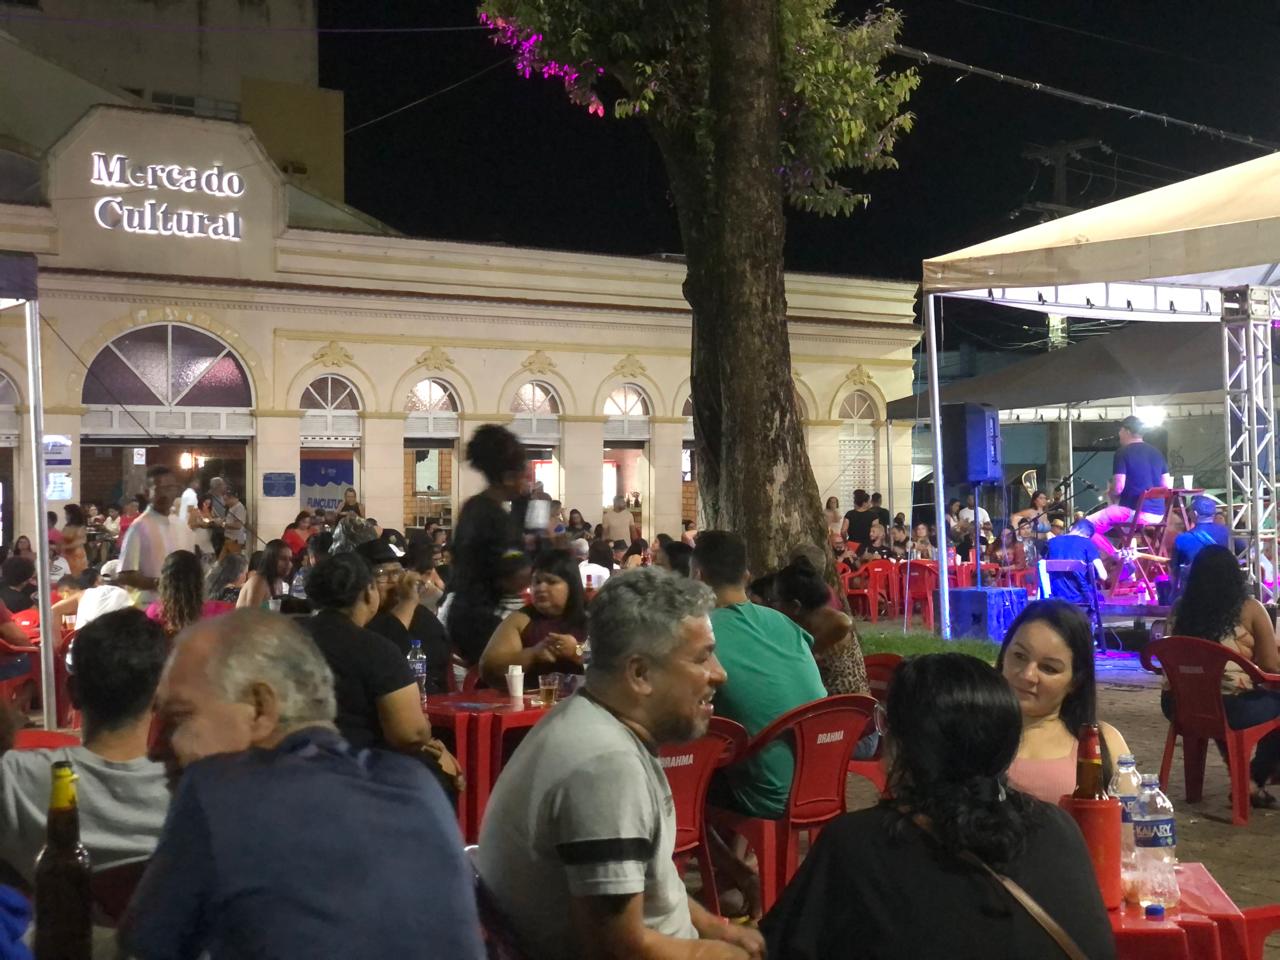 GRATUITO:  Mais de 40 músicos passarão pelo palco do Mercado Cultural neste final de semana